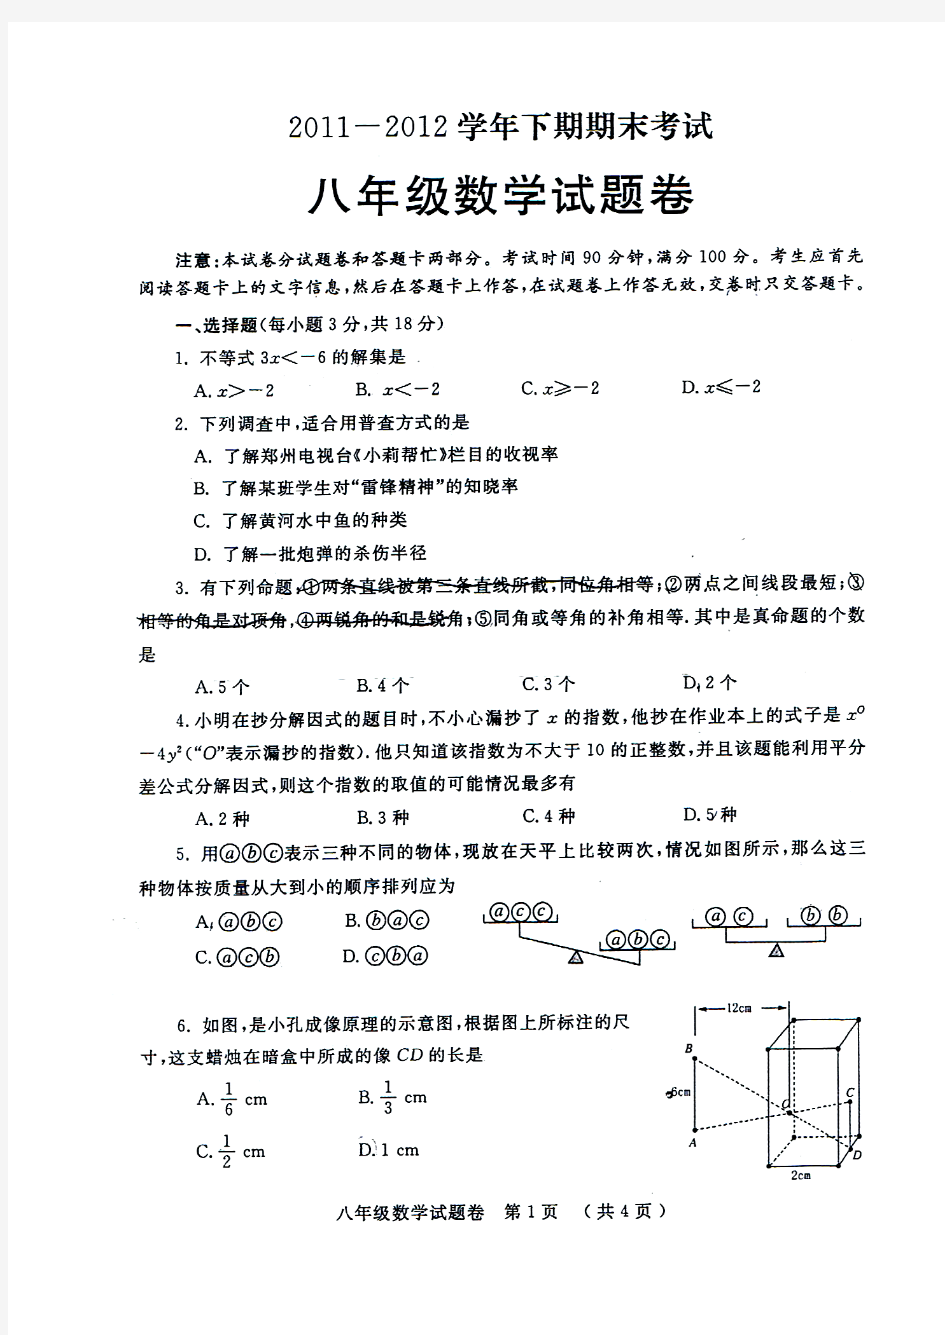 郑州市2011-2012学年下期期末考试八年级数学试题及答案(高清扫描版)